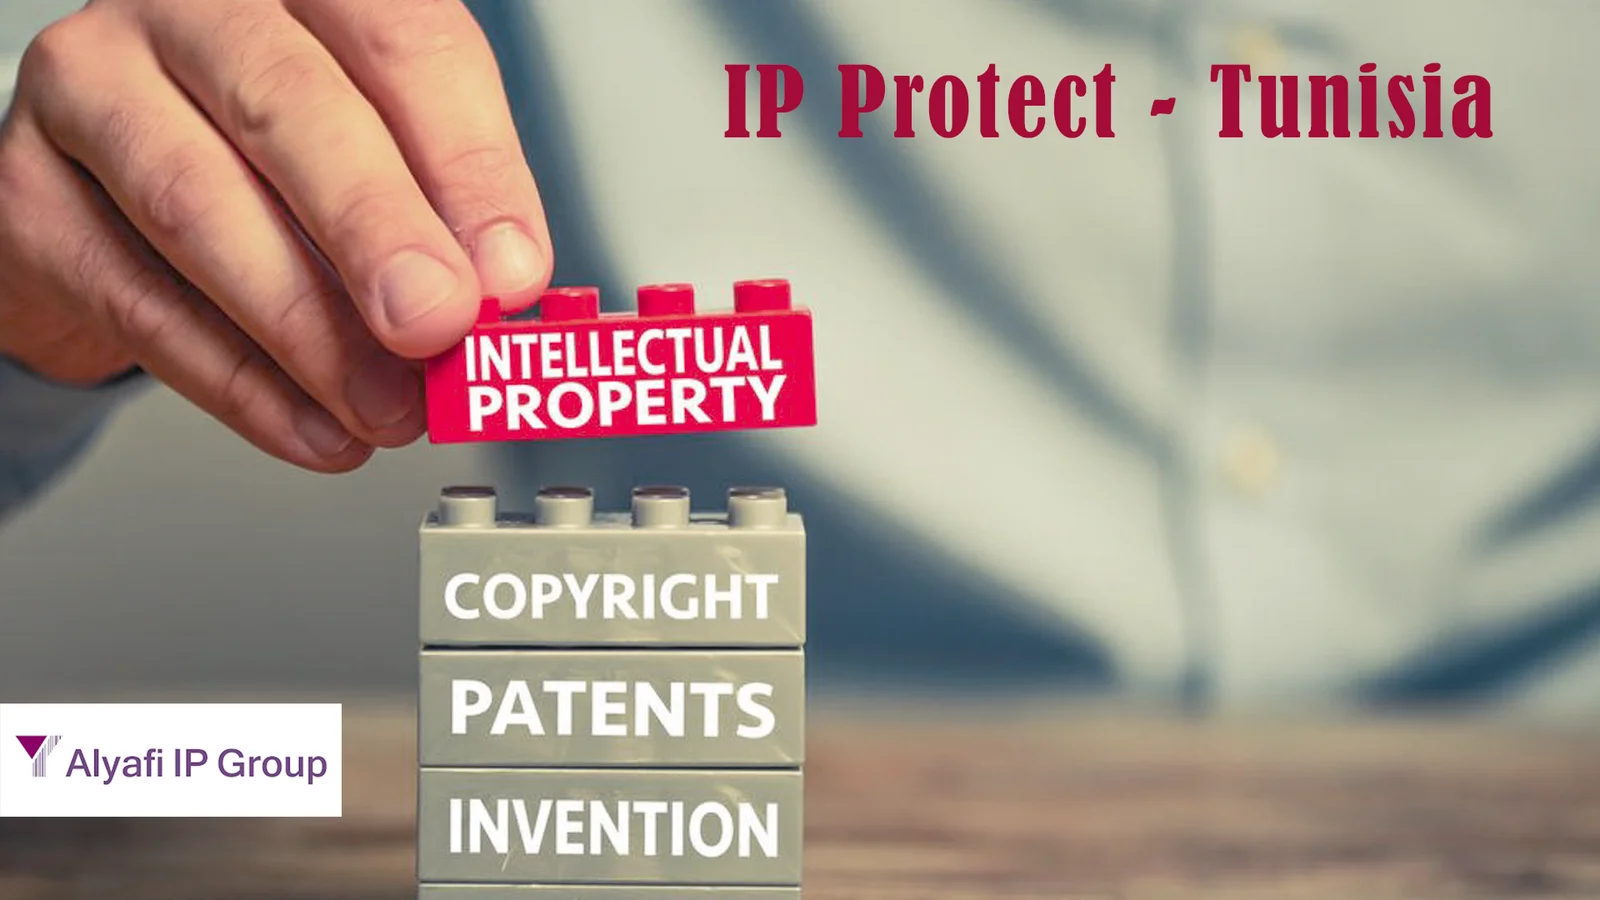 IP Protect - Tunisia